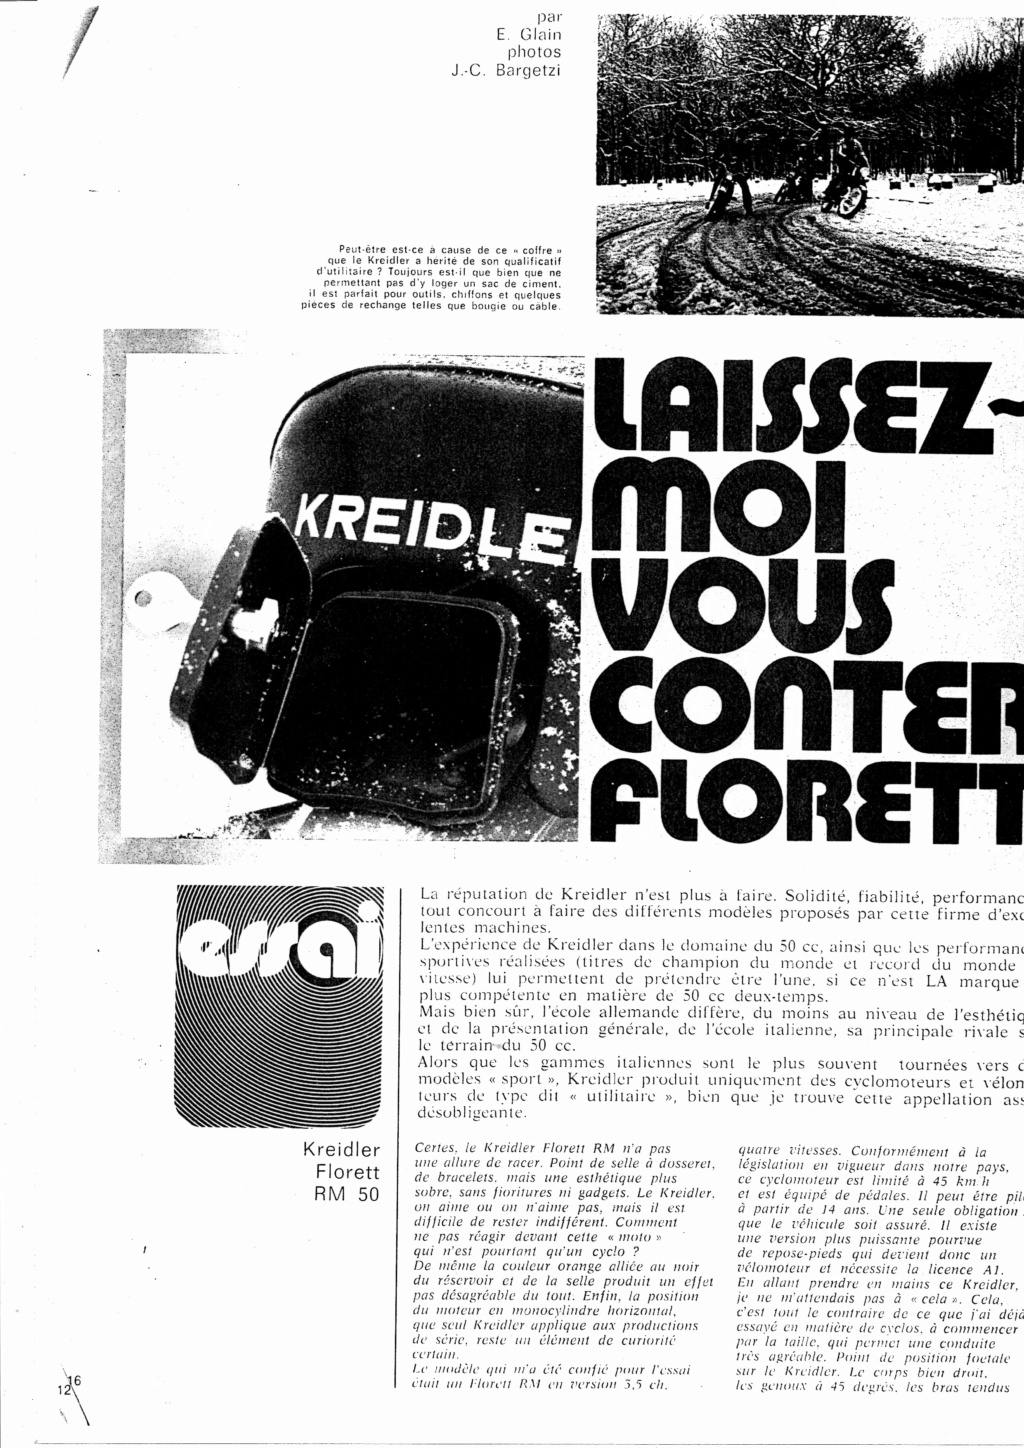 Le Kreidler RS dans la Presse. Suite. - Page 2 Essai_11